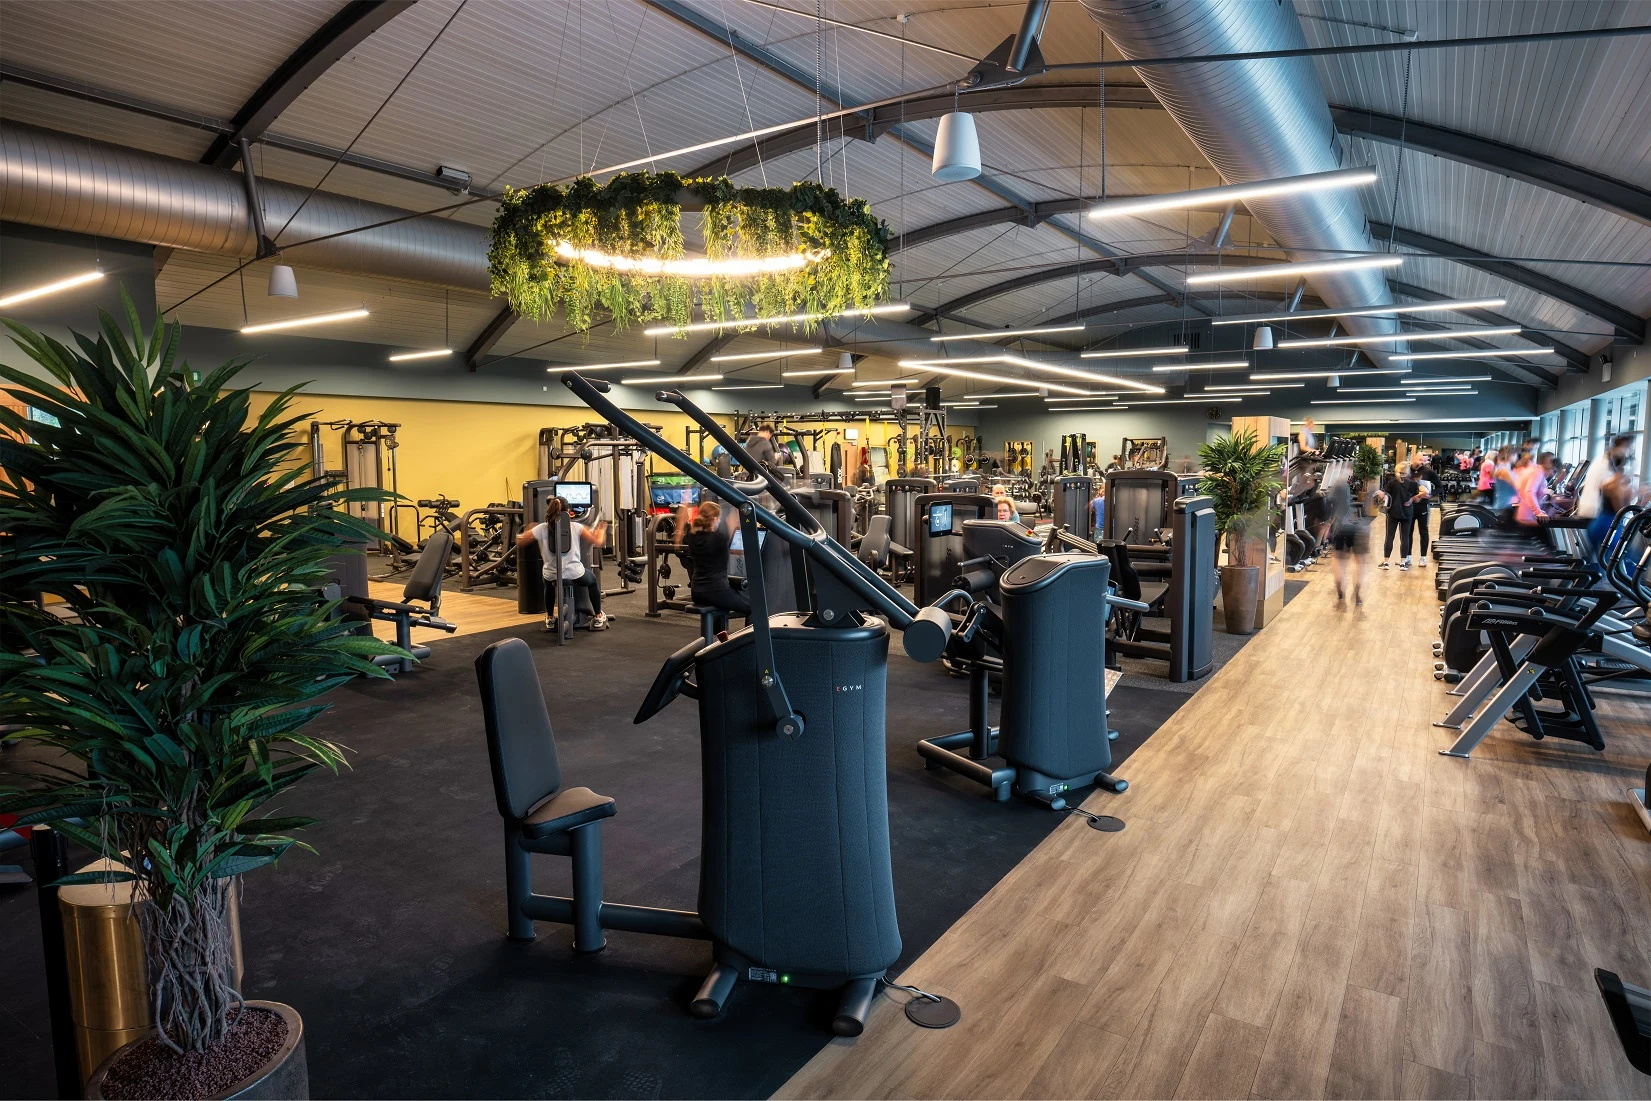 David Lloyd gym facility in Rotterdam